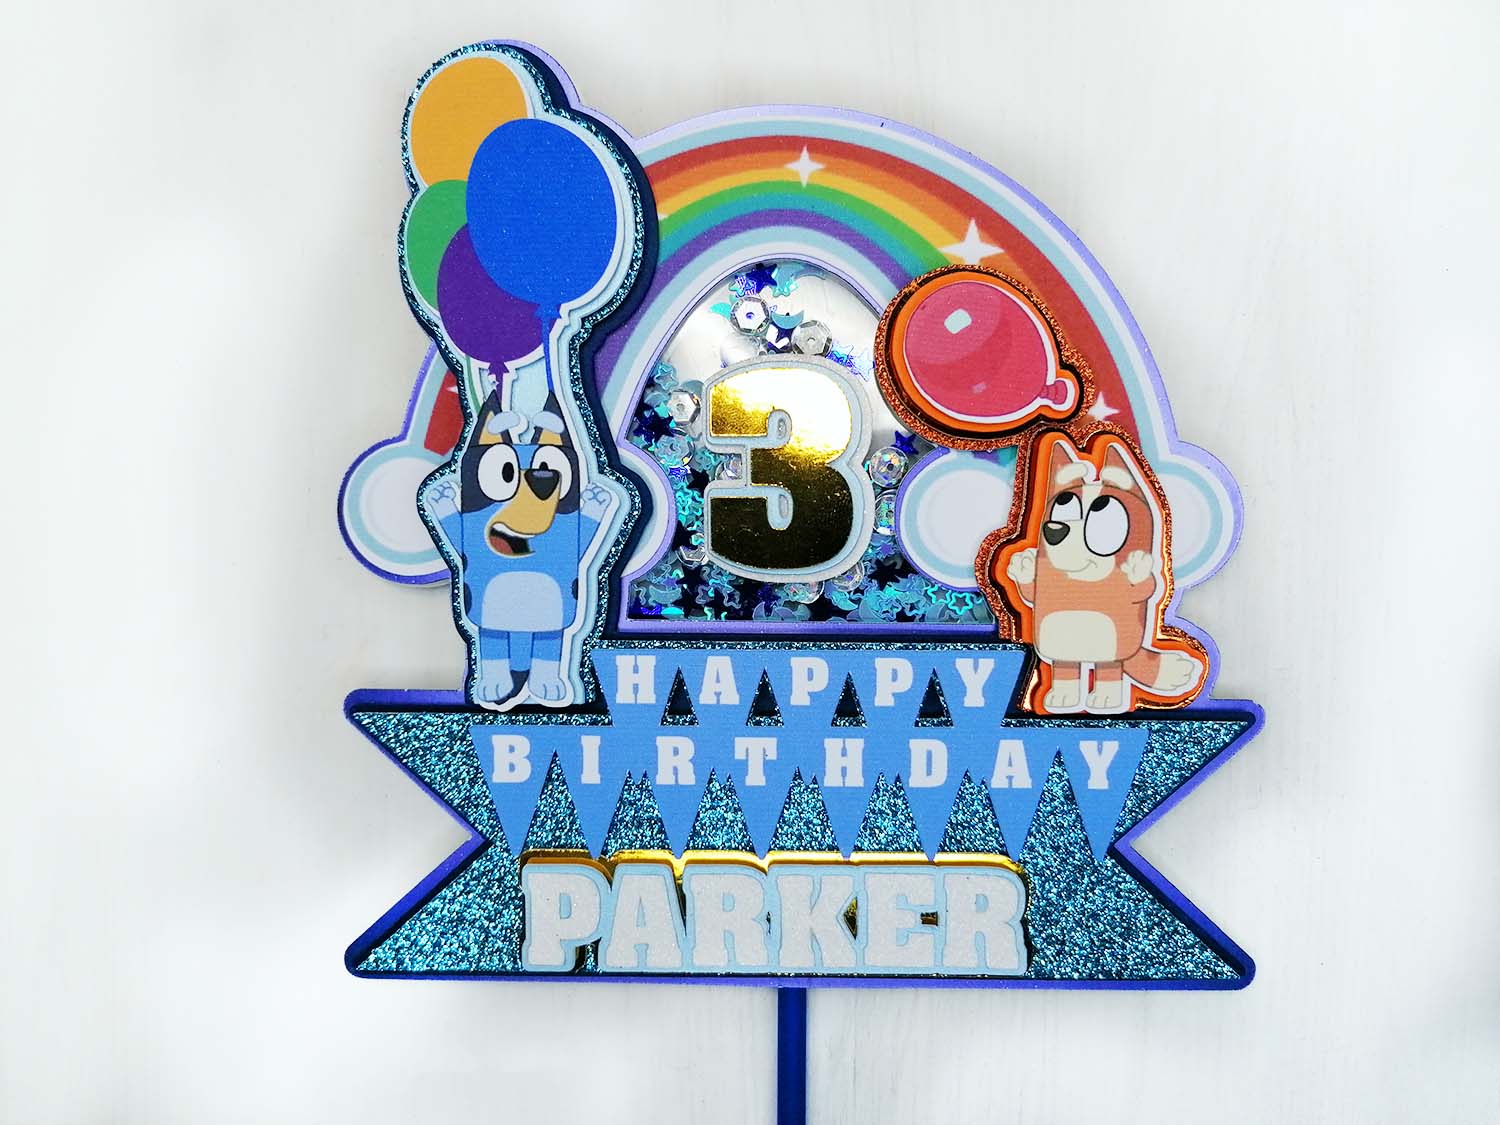 40pcs Banner , Cake Toppers Y Globos Set Para Kid's Bingo Bluey